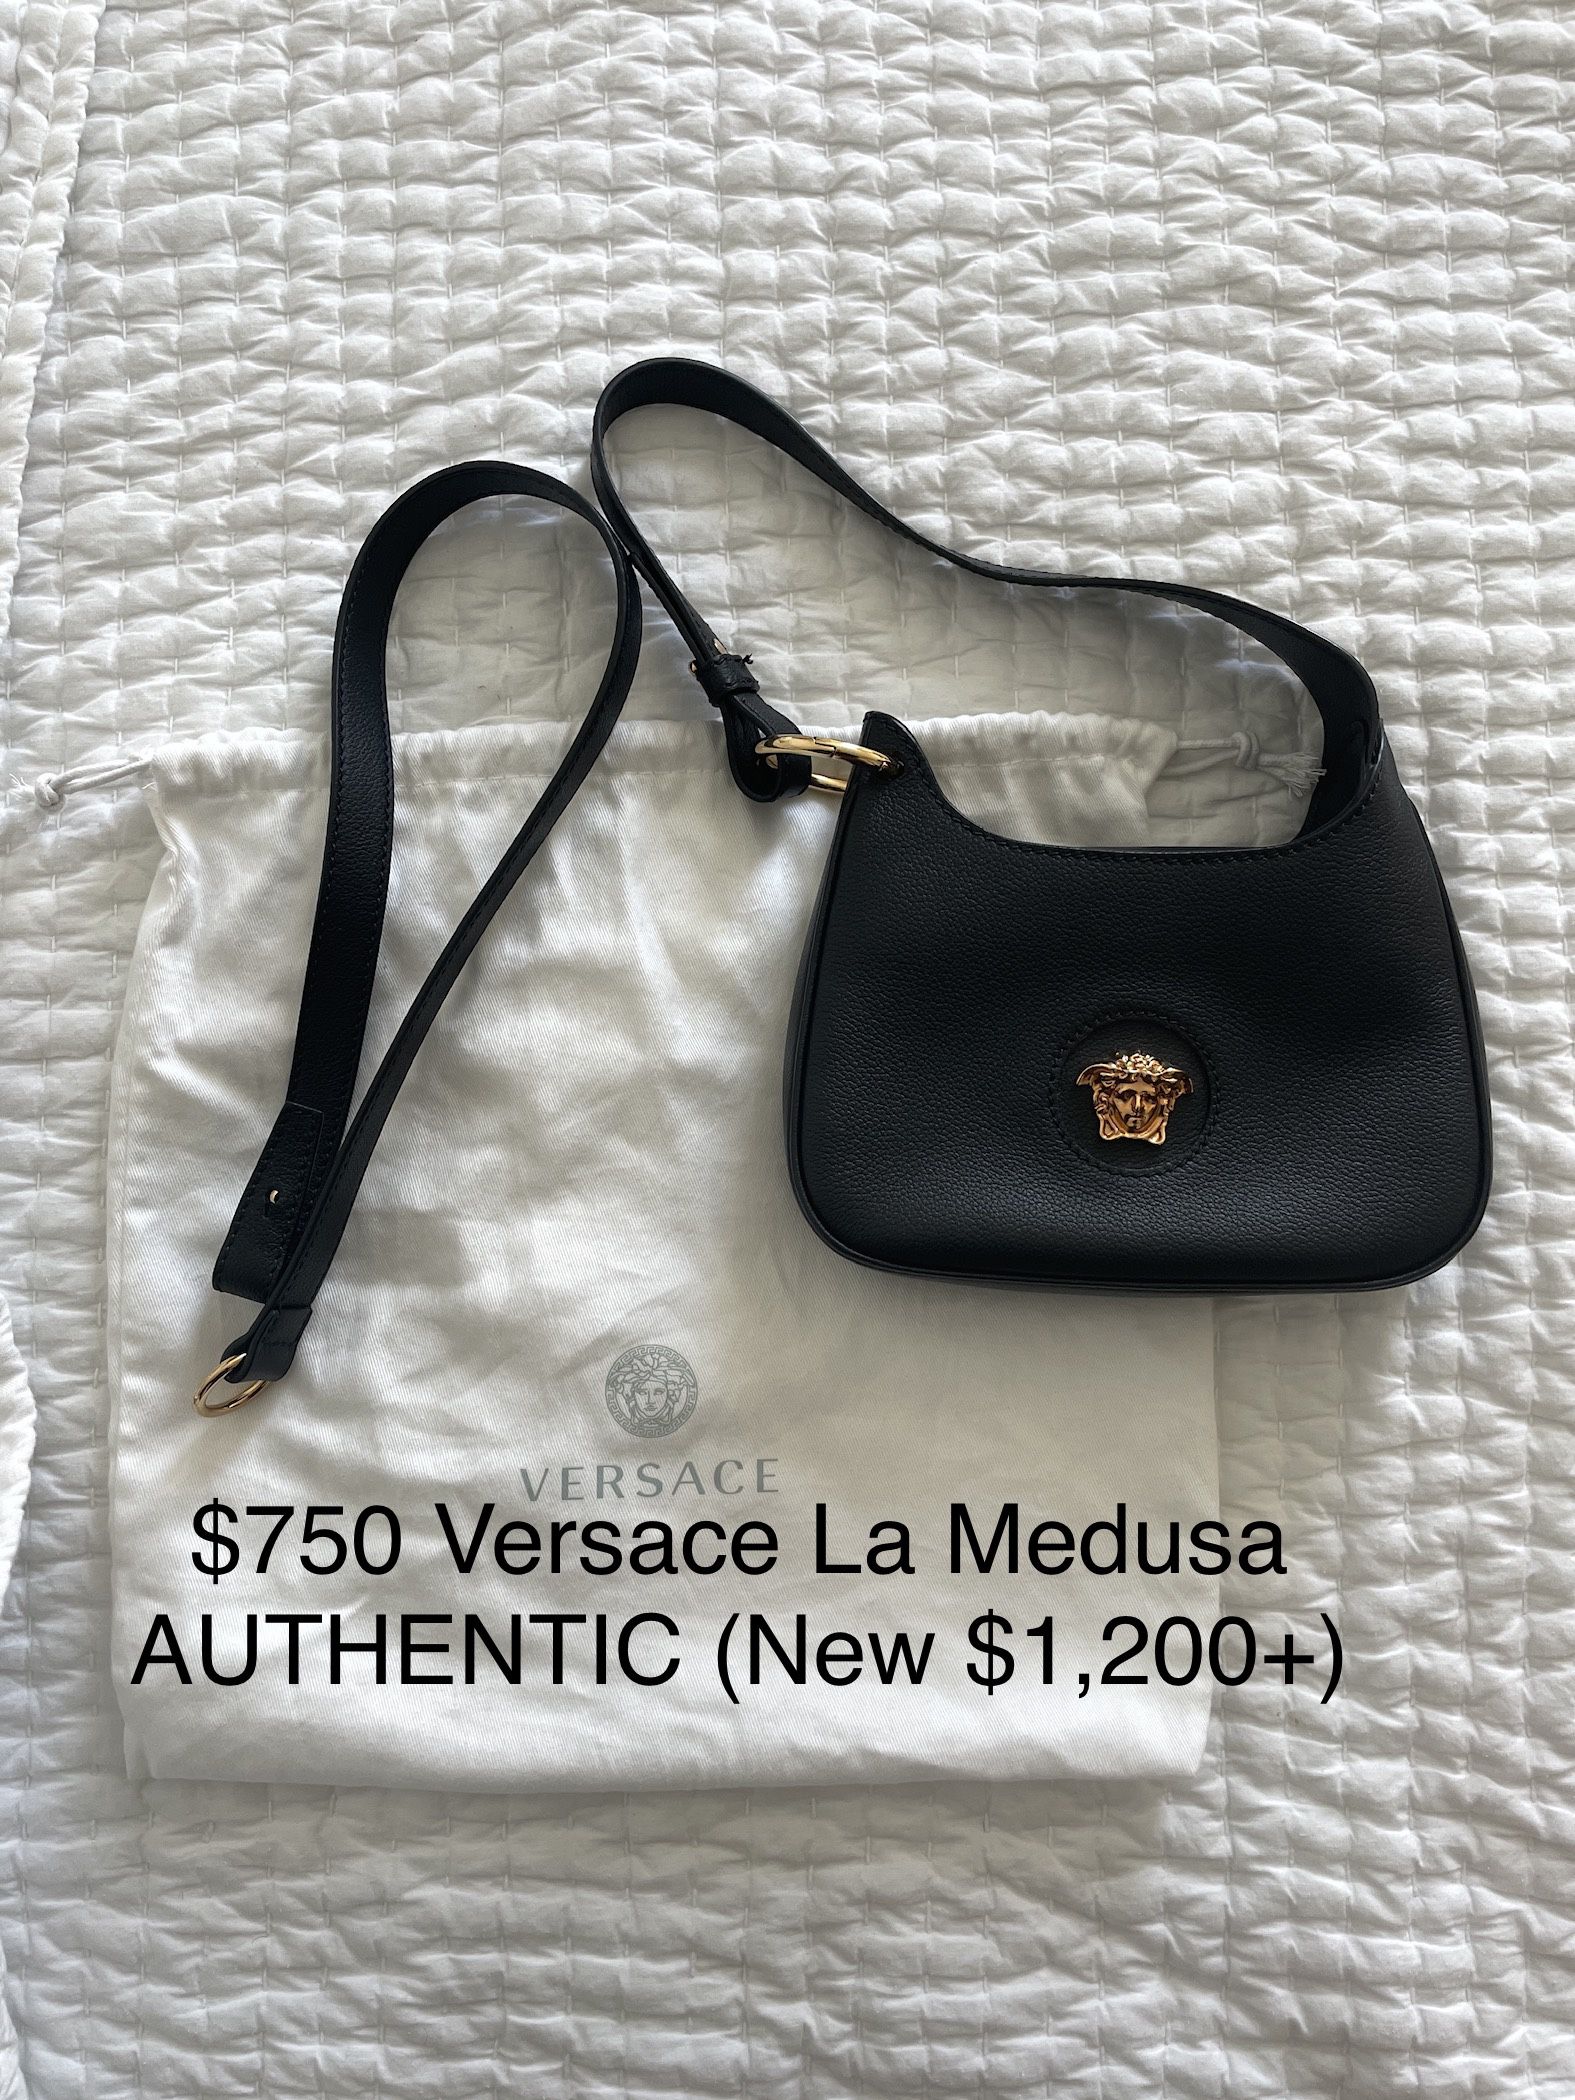 $750 Versace La Medusa Bag (Real) - new $1200